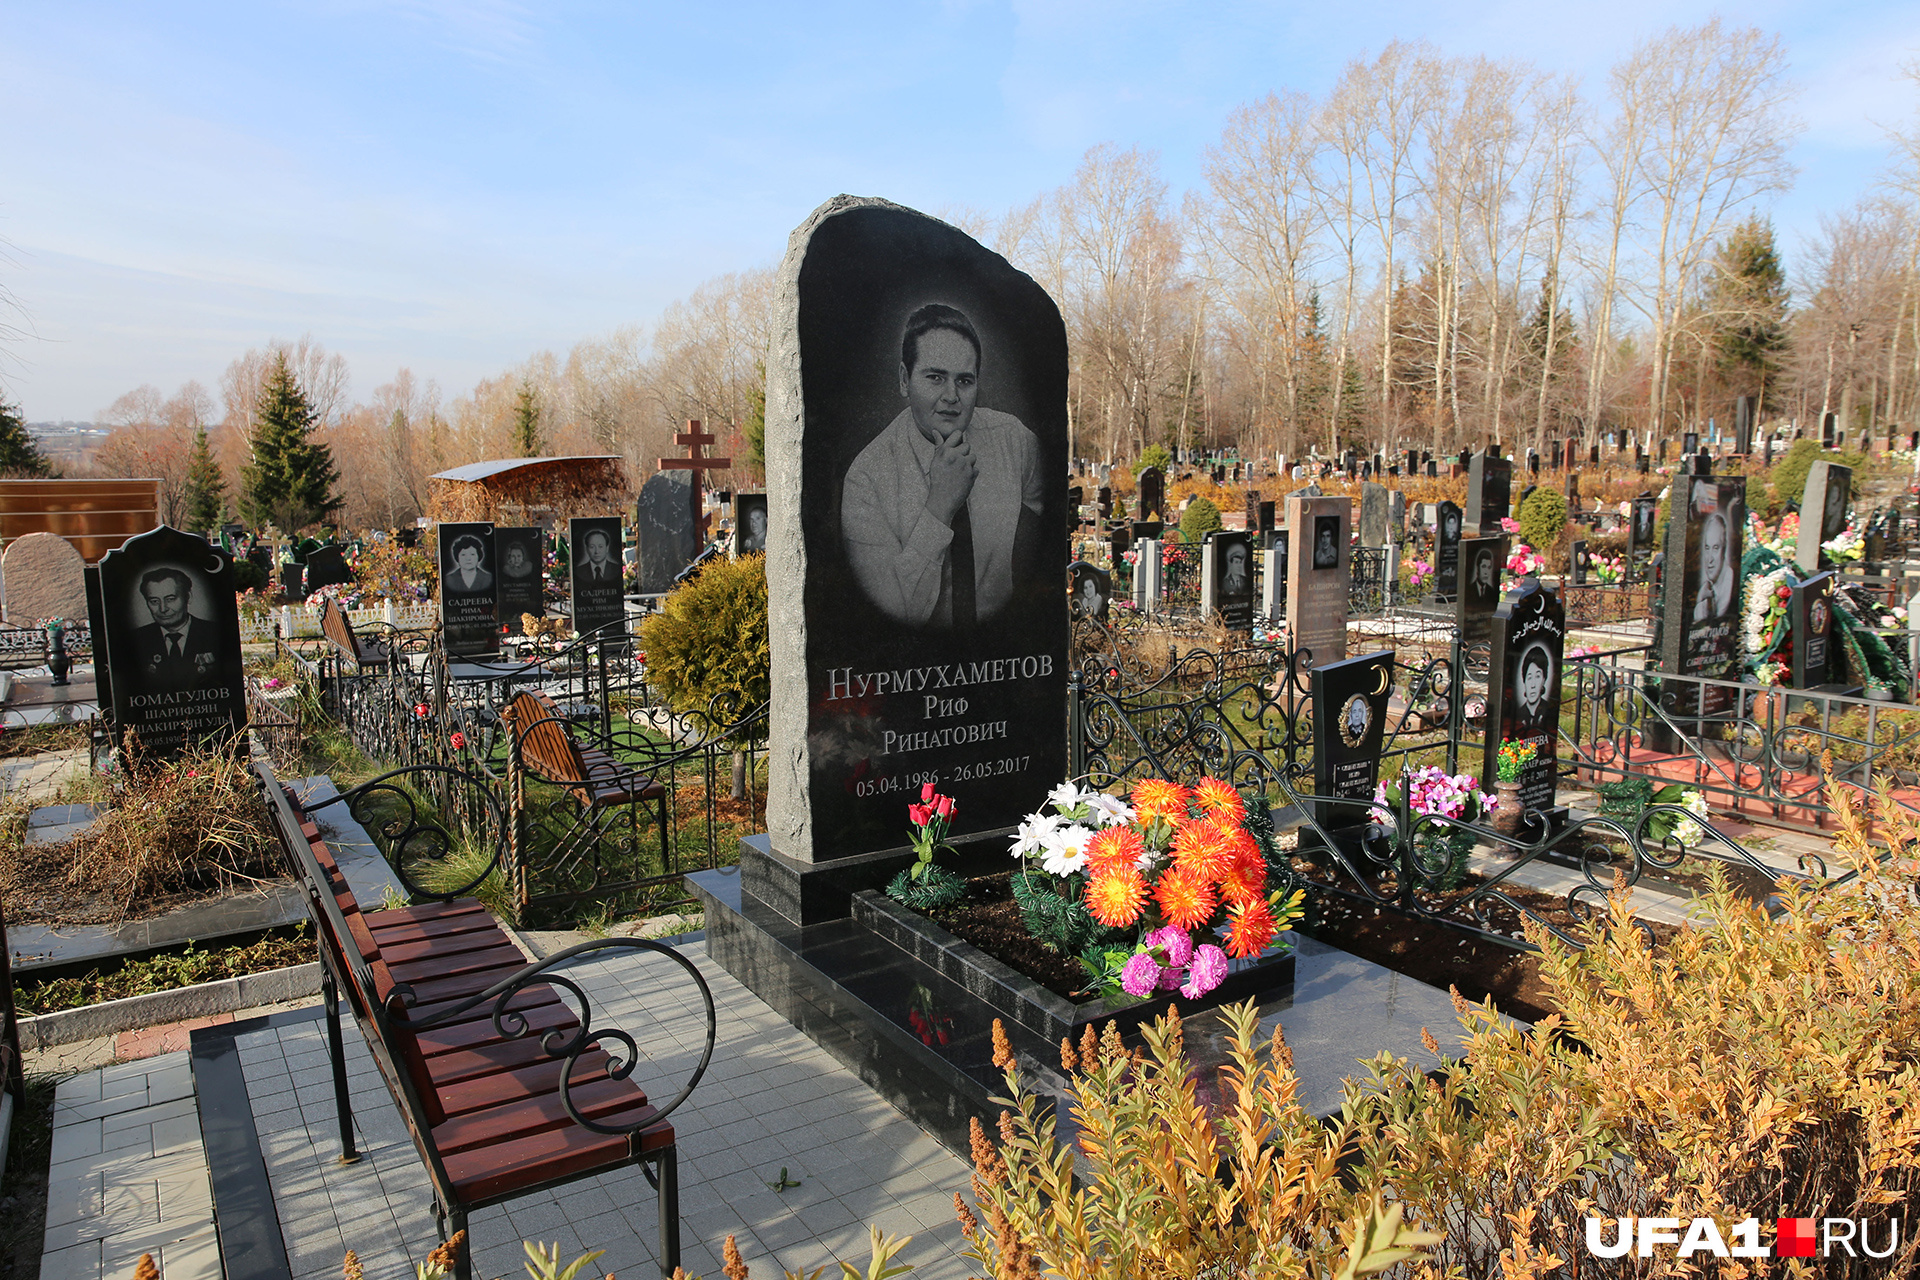 Места в ВИП-зоне Северного кладбища, по словам ритуальщиков, обходятся родственникам усопших в сотни тысяч рублей